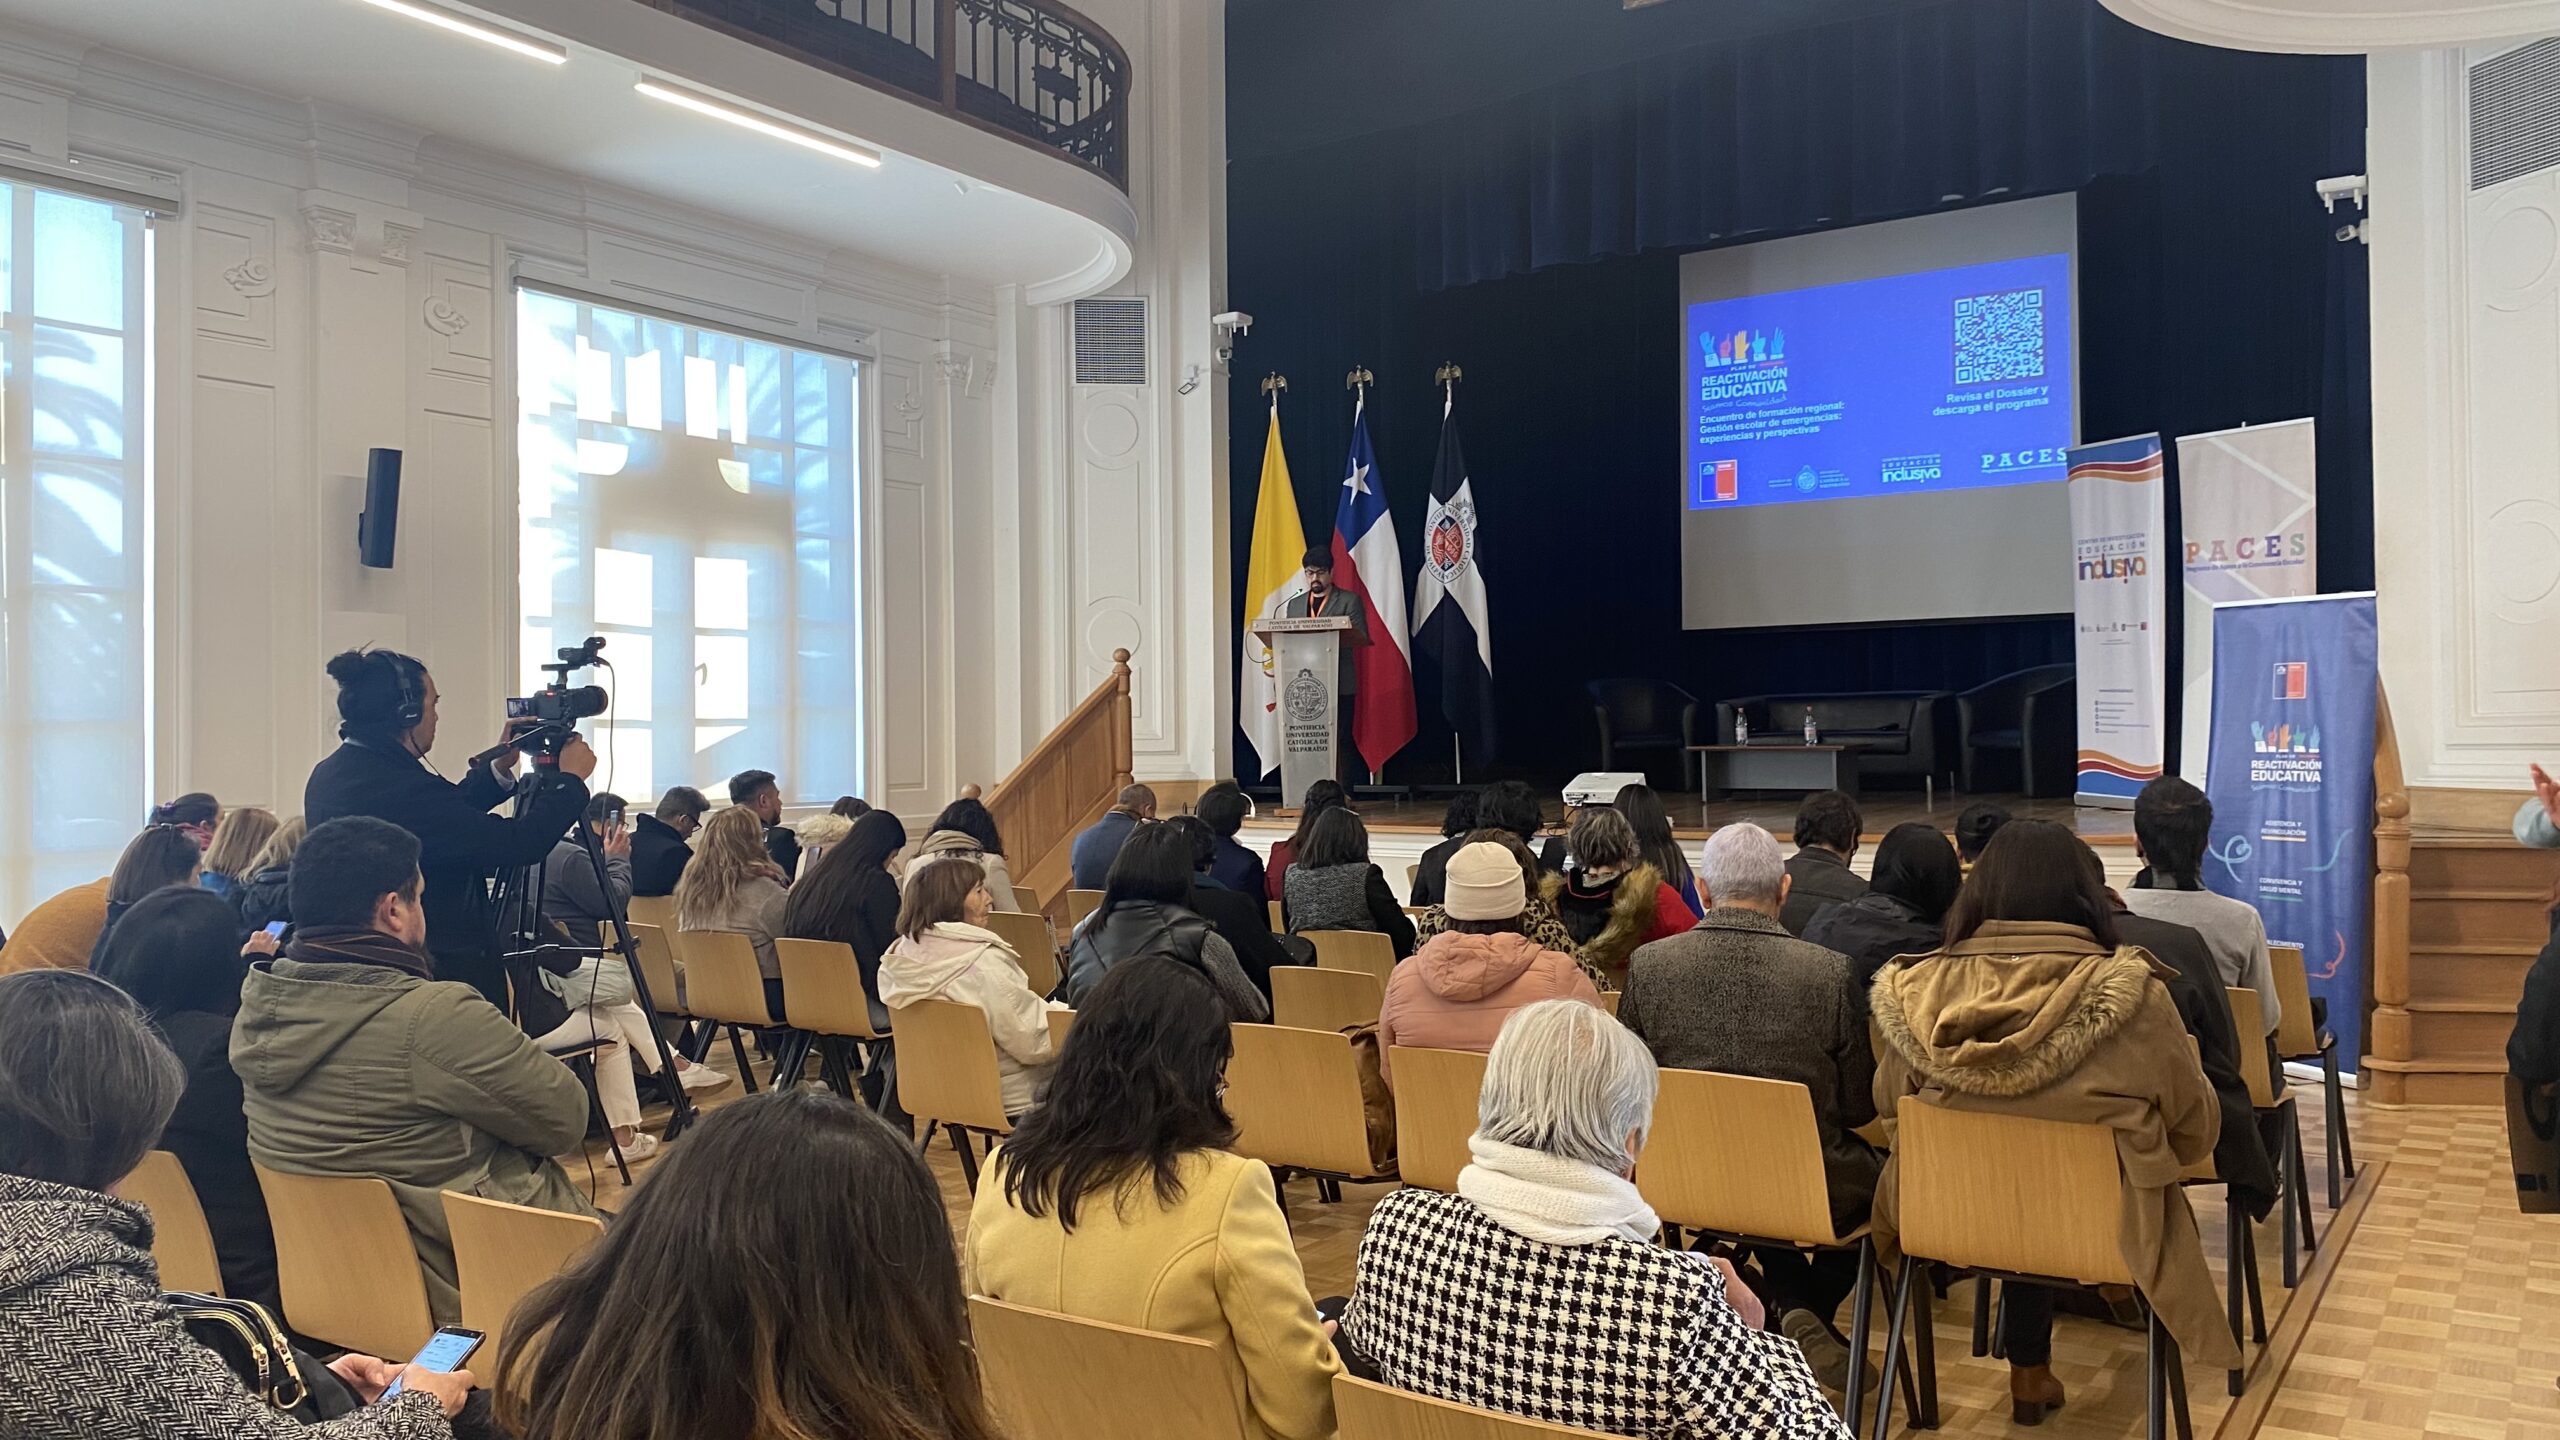 Encuentro de Formación Regional en Valparaíso de «A Convivir se Aprende»: Presenta Actualización de la Política de Convivencia Escolar